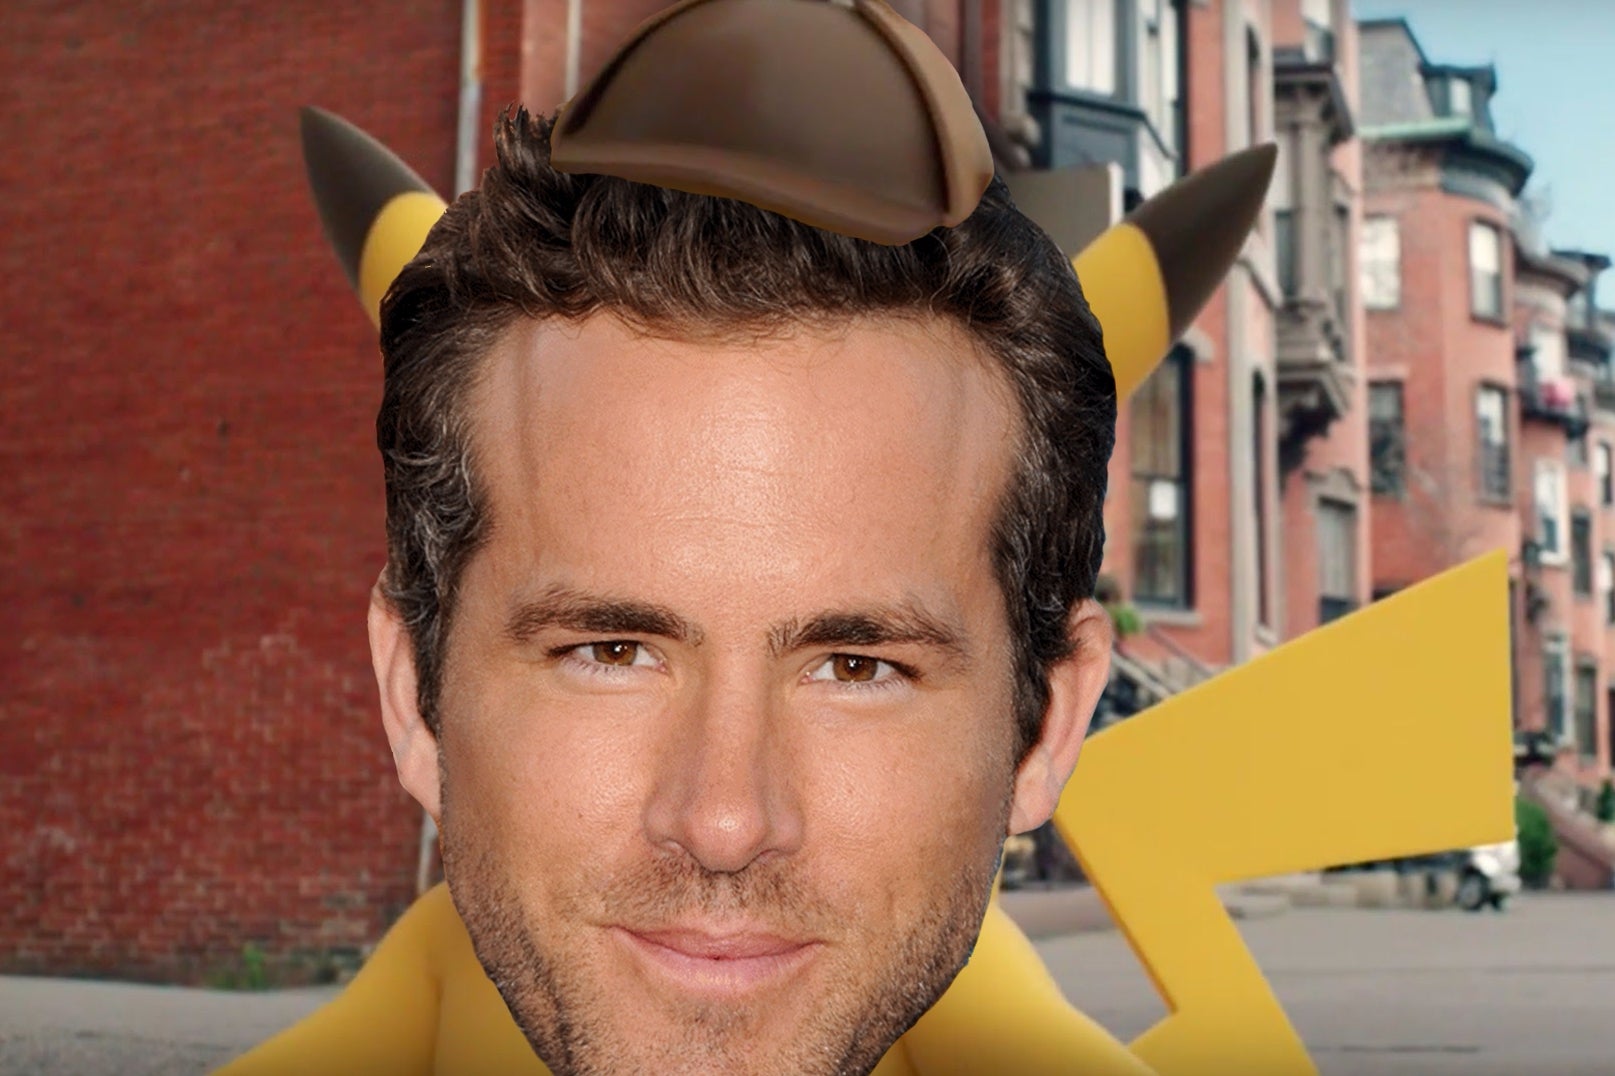 Afbeeldingen van Ryan Reynolds speelt Pikachu in live-action Pokémon film